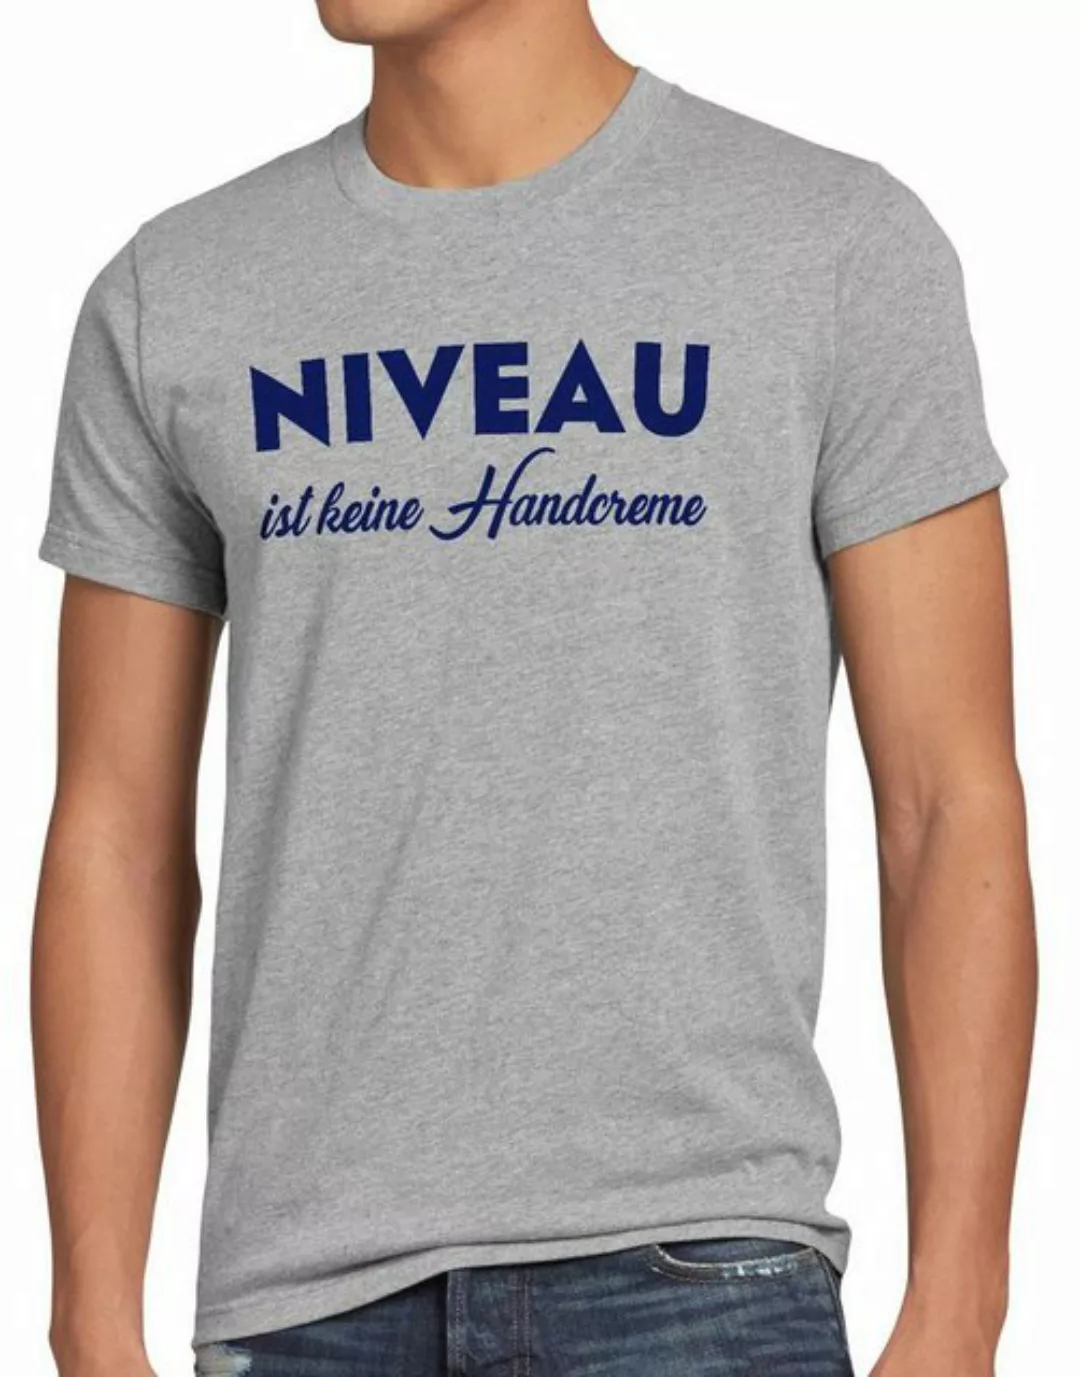 style3 Print-Shirt Herren T-Shirt Niveau ist keine Handcreme Creme Funshirt günstig online kaufen